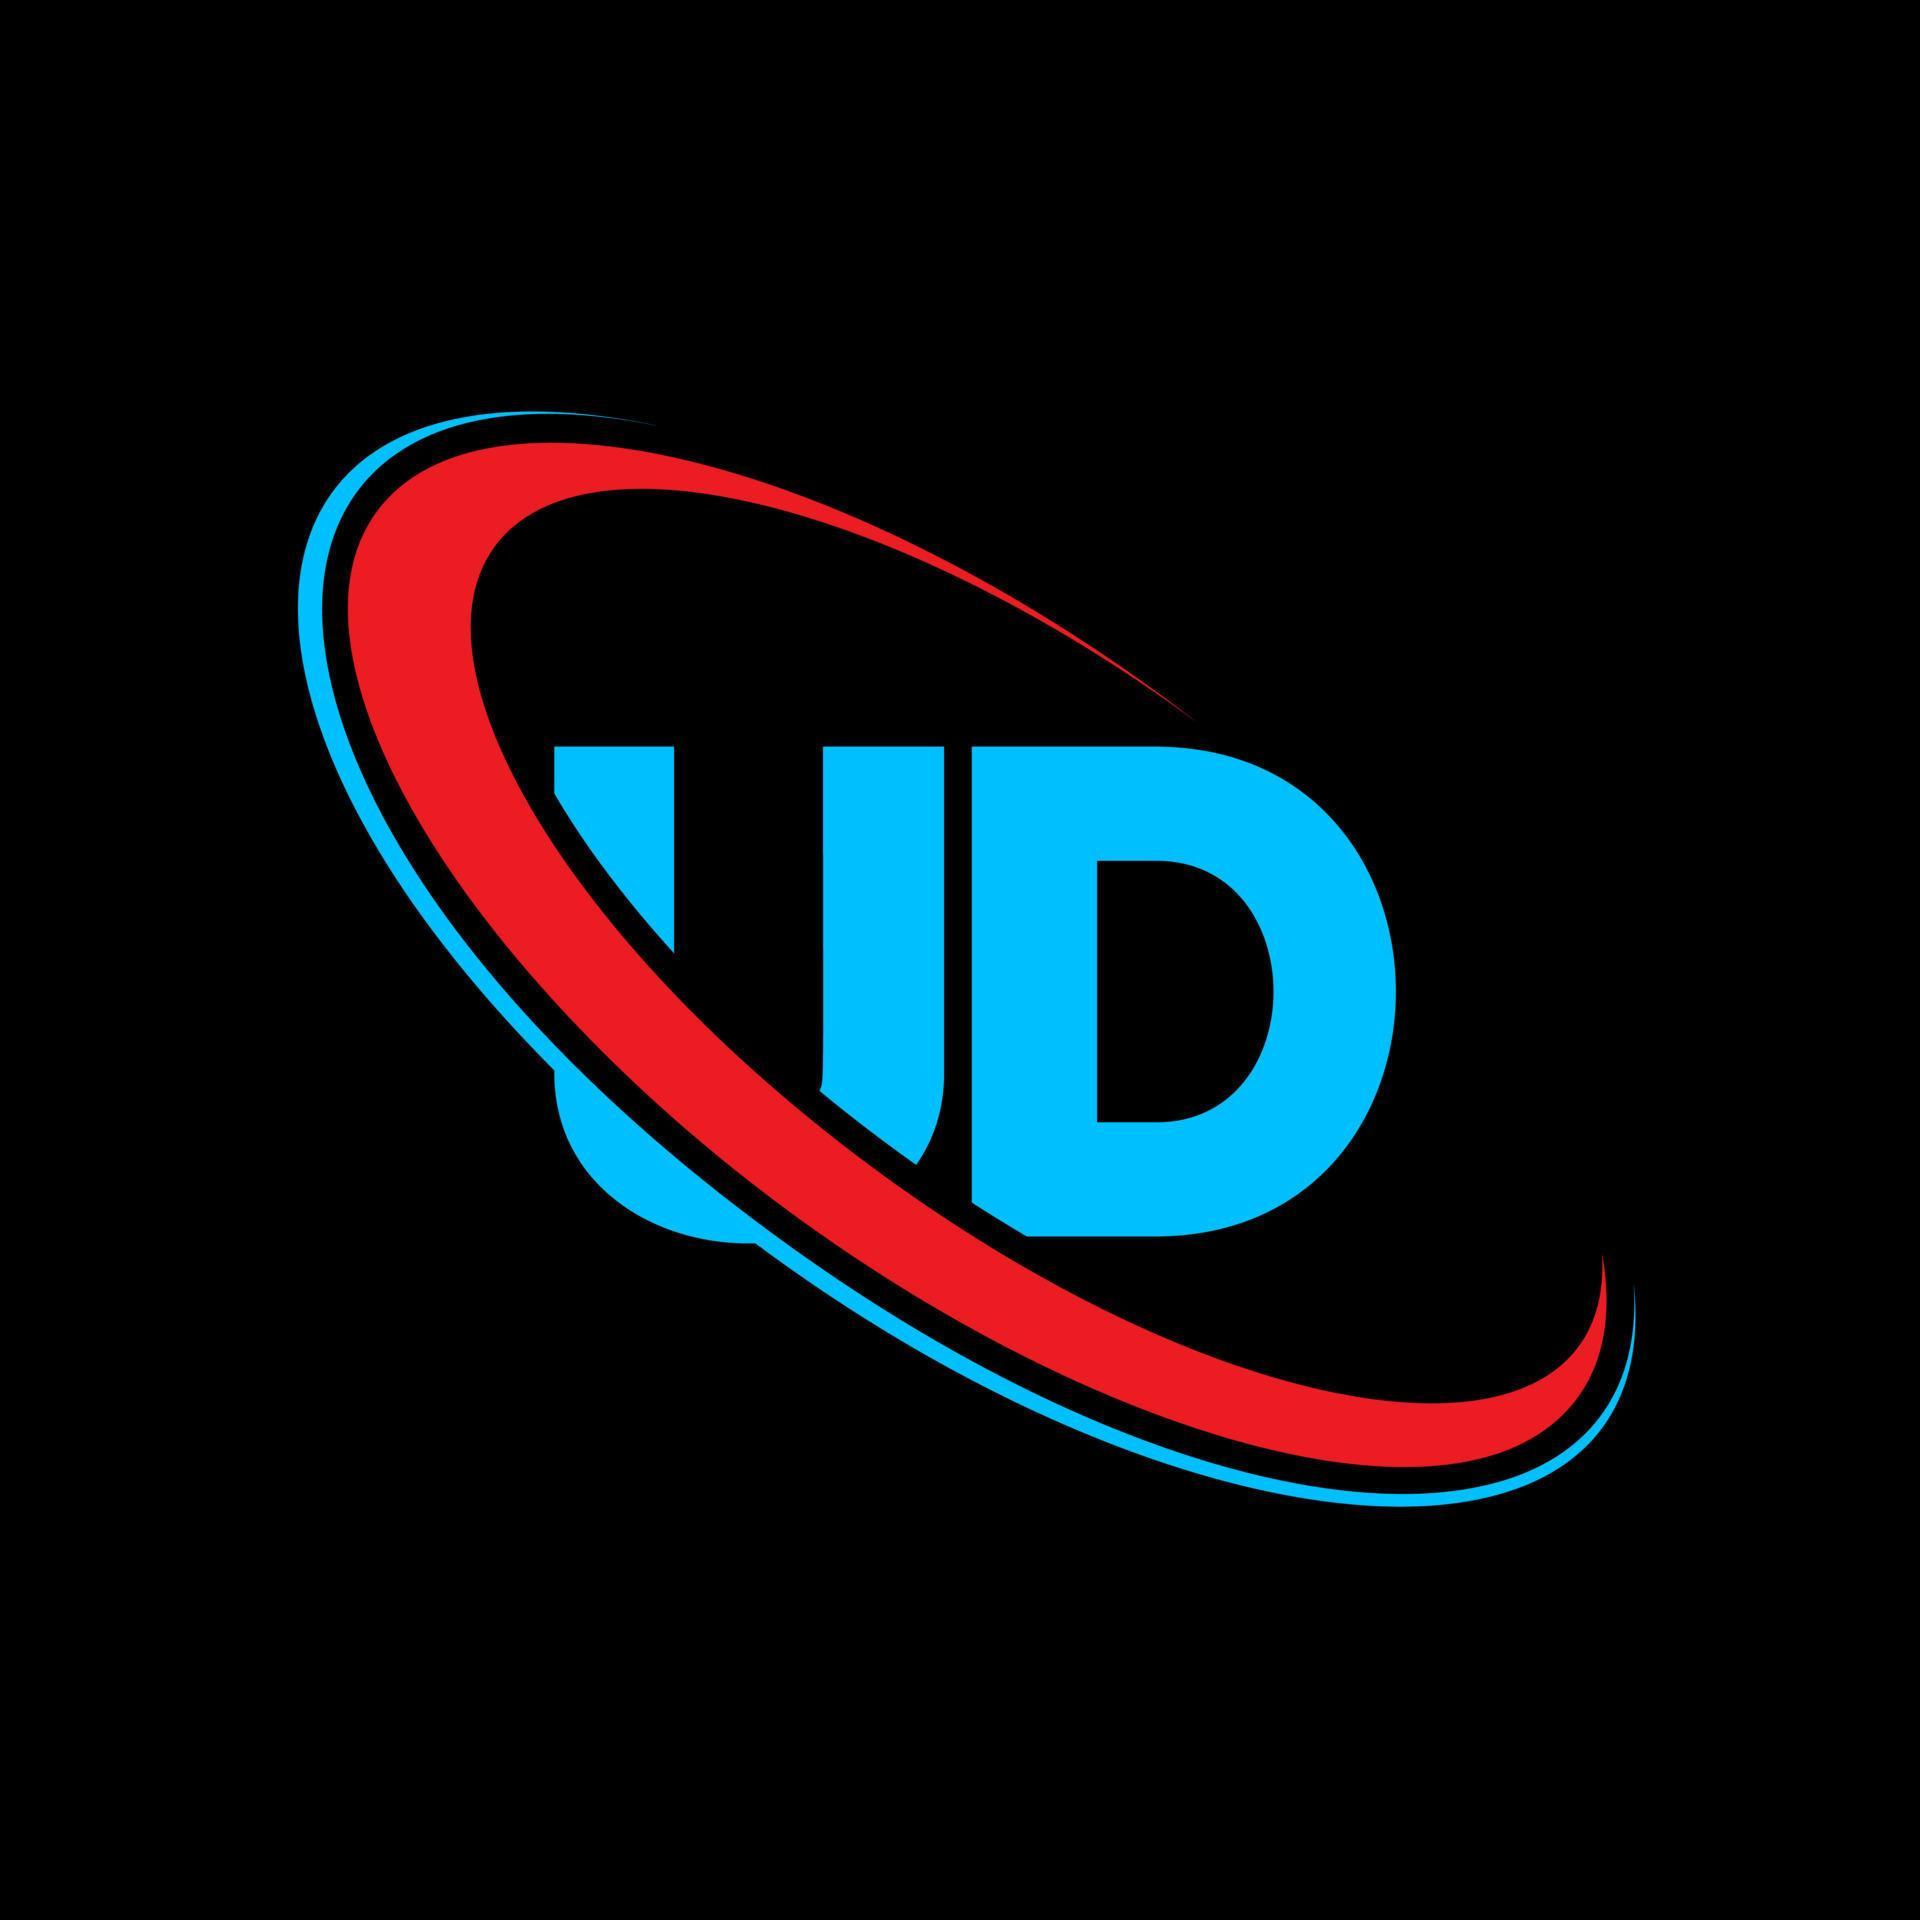 UD logo. UD design. Blue and red UD letter. UD letter logo design ...